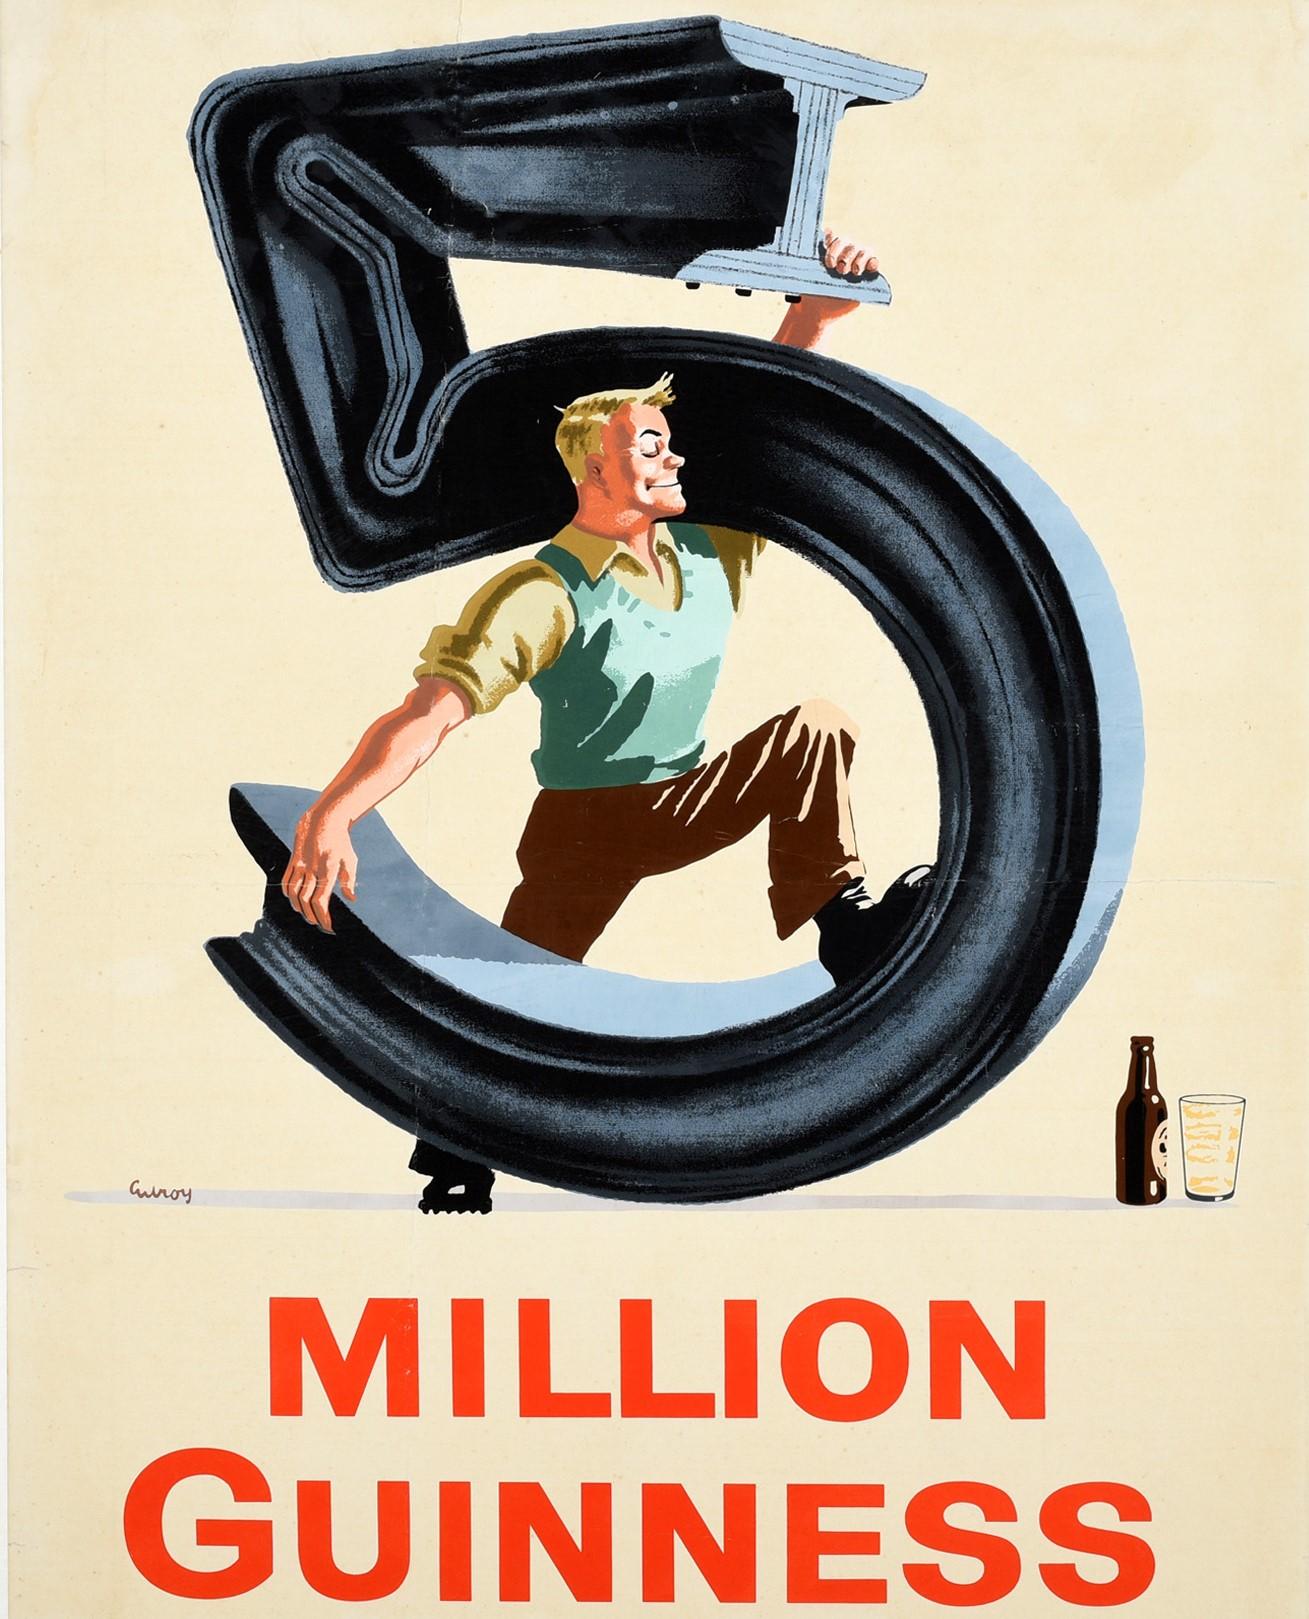 Original Vintage-Werbeplakat für das Kultgetränk Guinness Irish Stout Bier - 5 Millionen Guinness für Stärke jeden Tag - mit einem lächelnden Mann, der einen Metallträger mit Leichtigkeit in die Form der Zahl fünf biegt, ihn mit beiden Armen hält